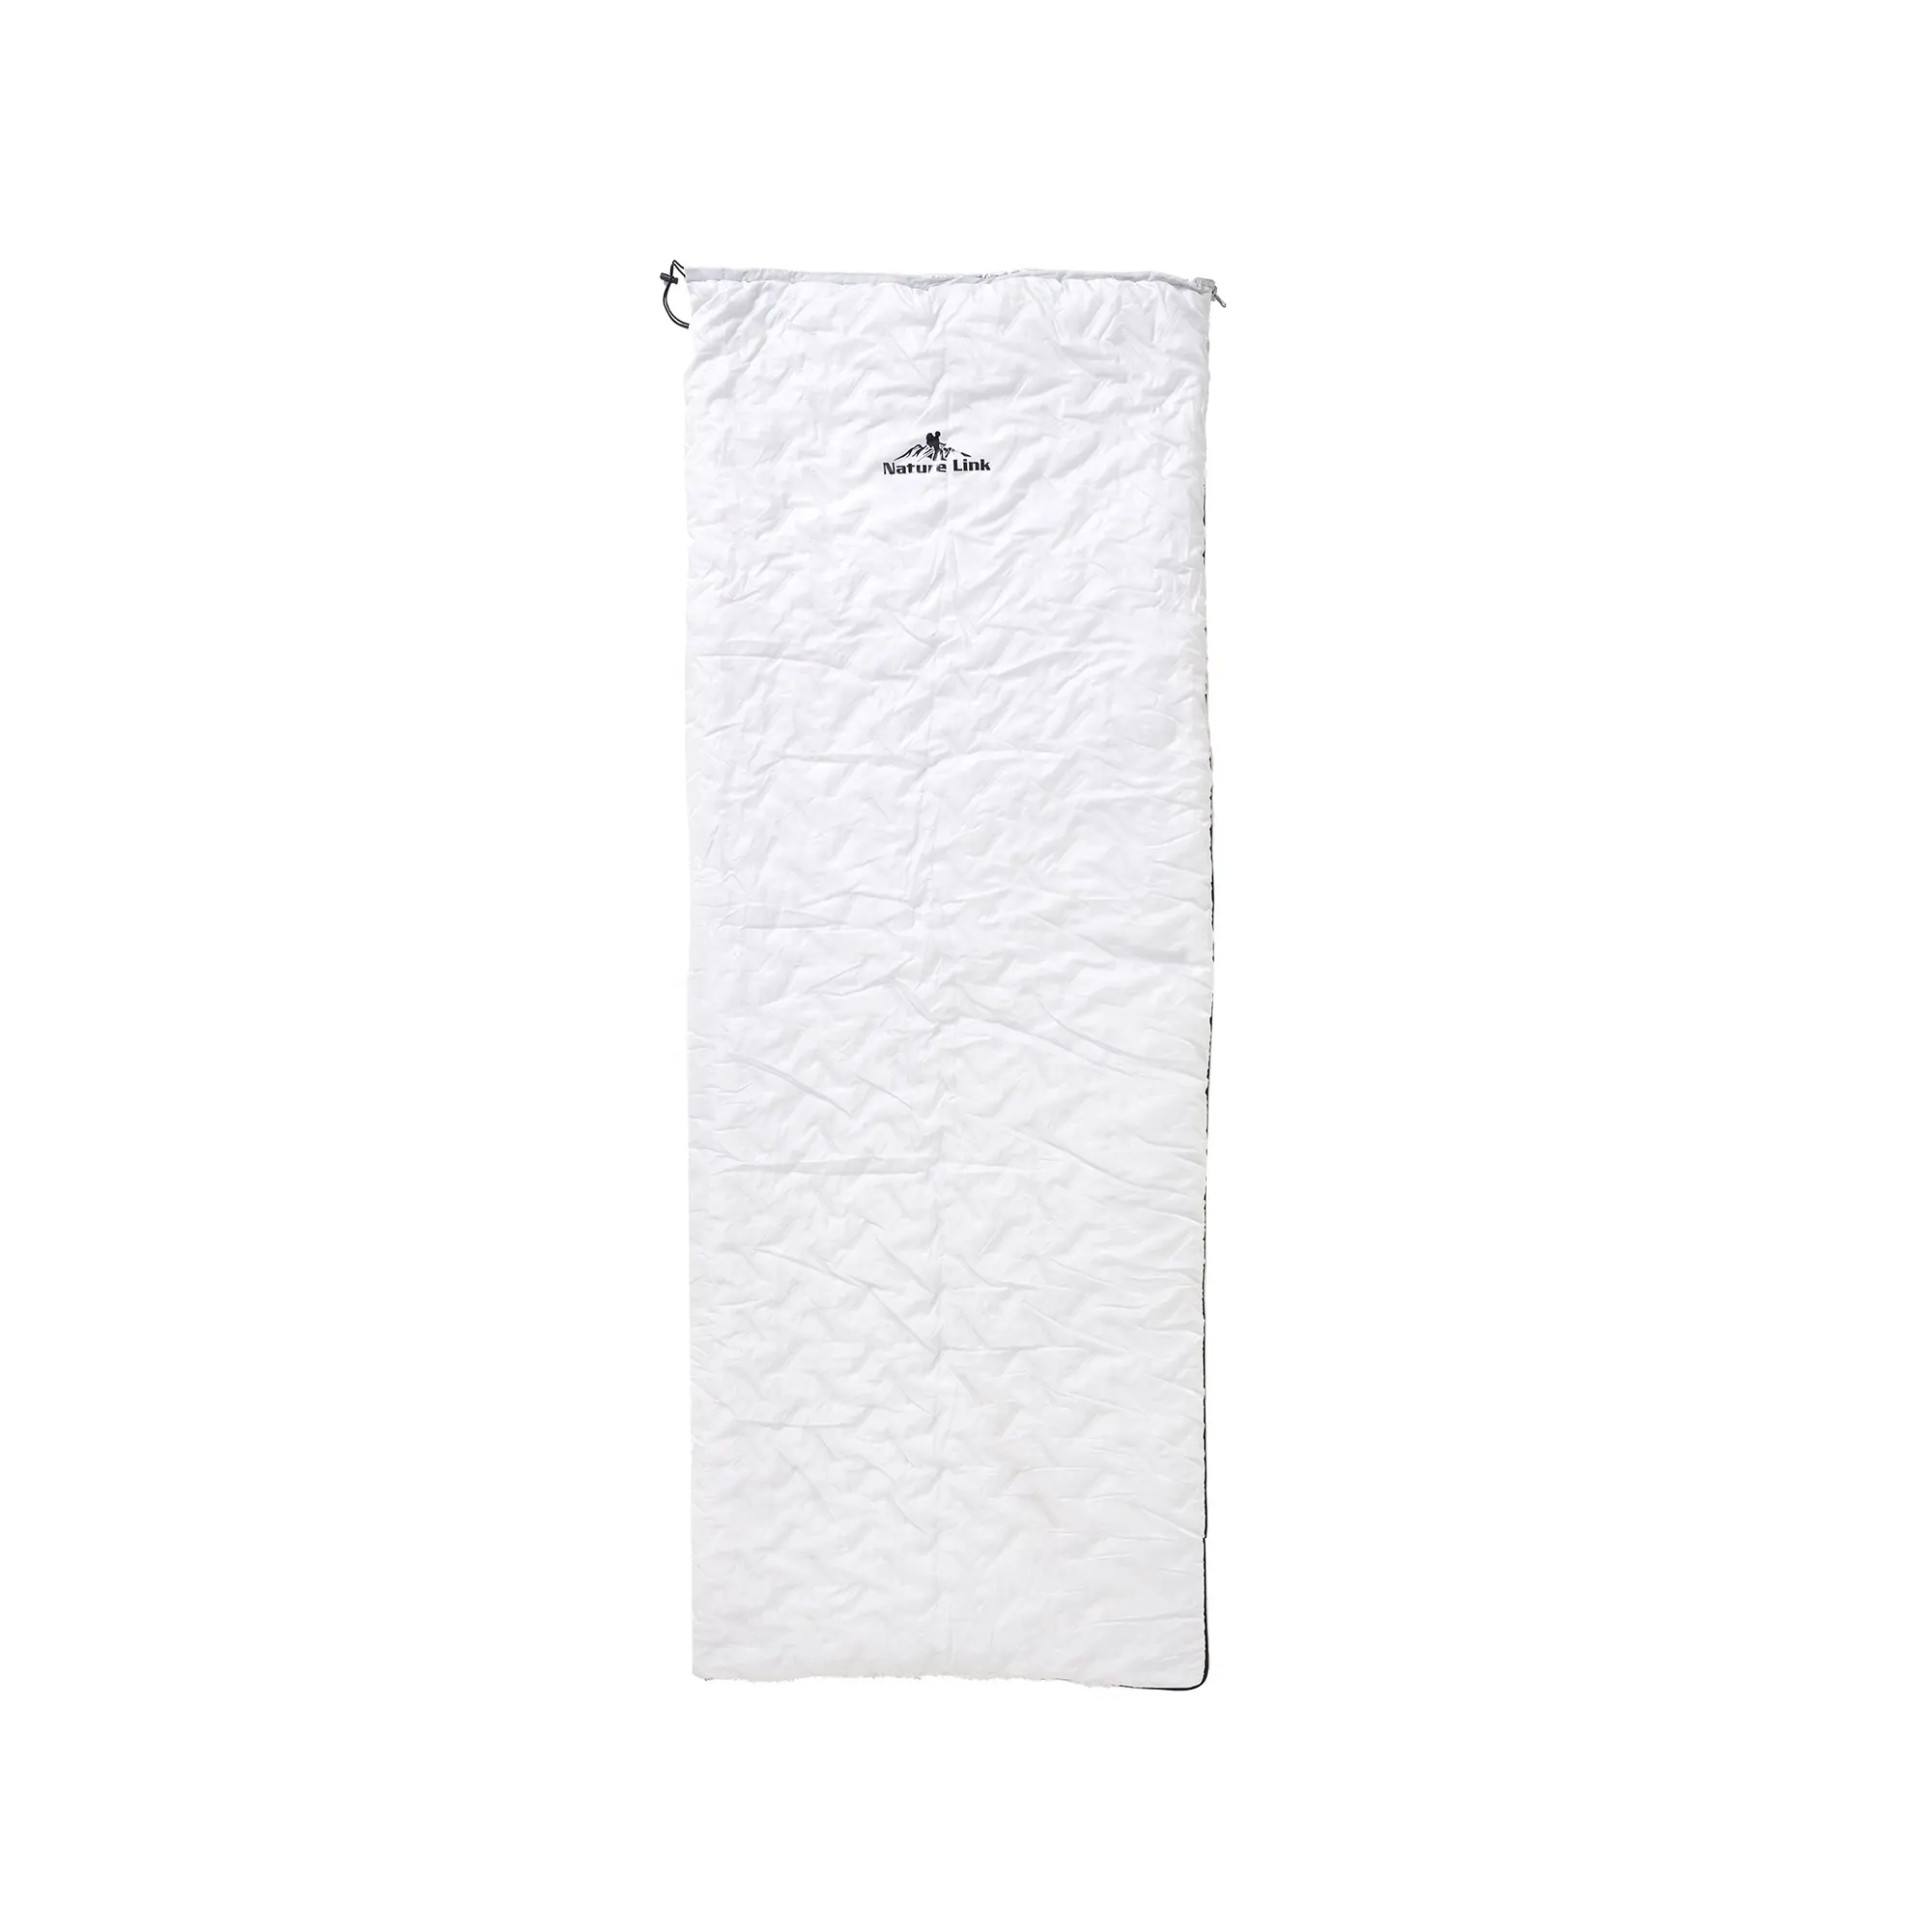 Yetişkinler için pamuk doldurma ile OEM özel kış sıcaklık Polyester kumaş çift Ultralight aşağı uyku tulumu